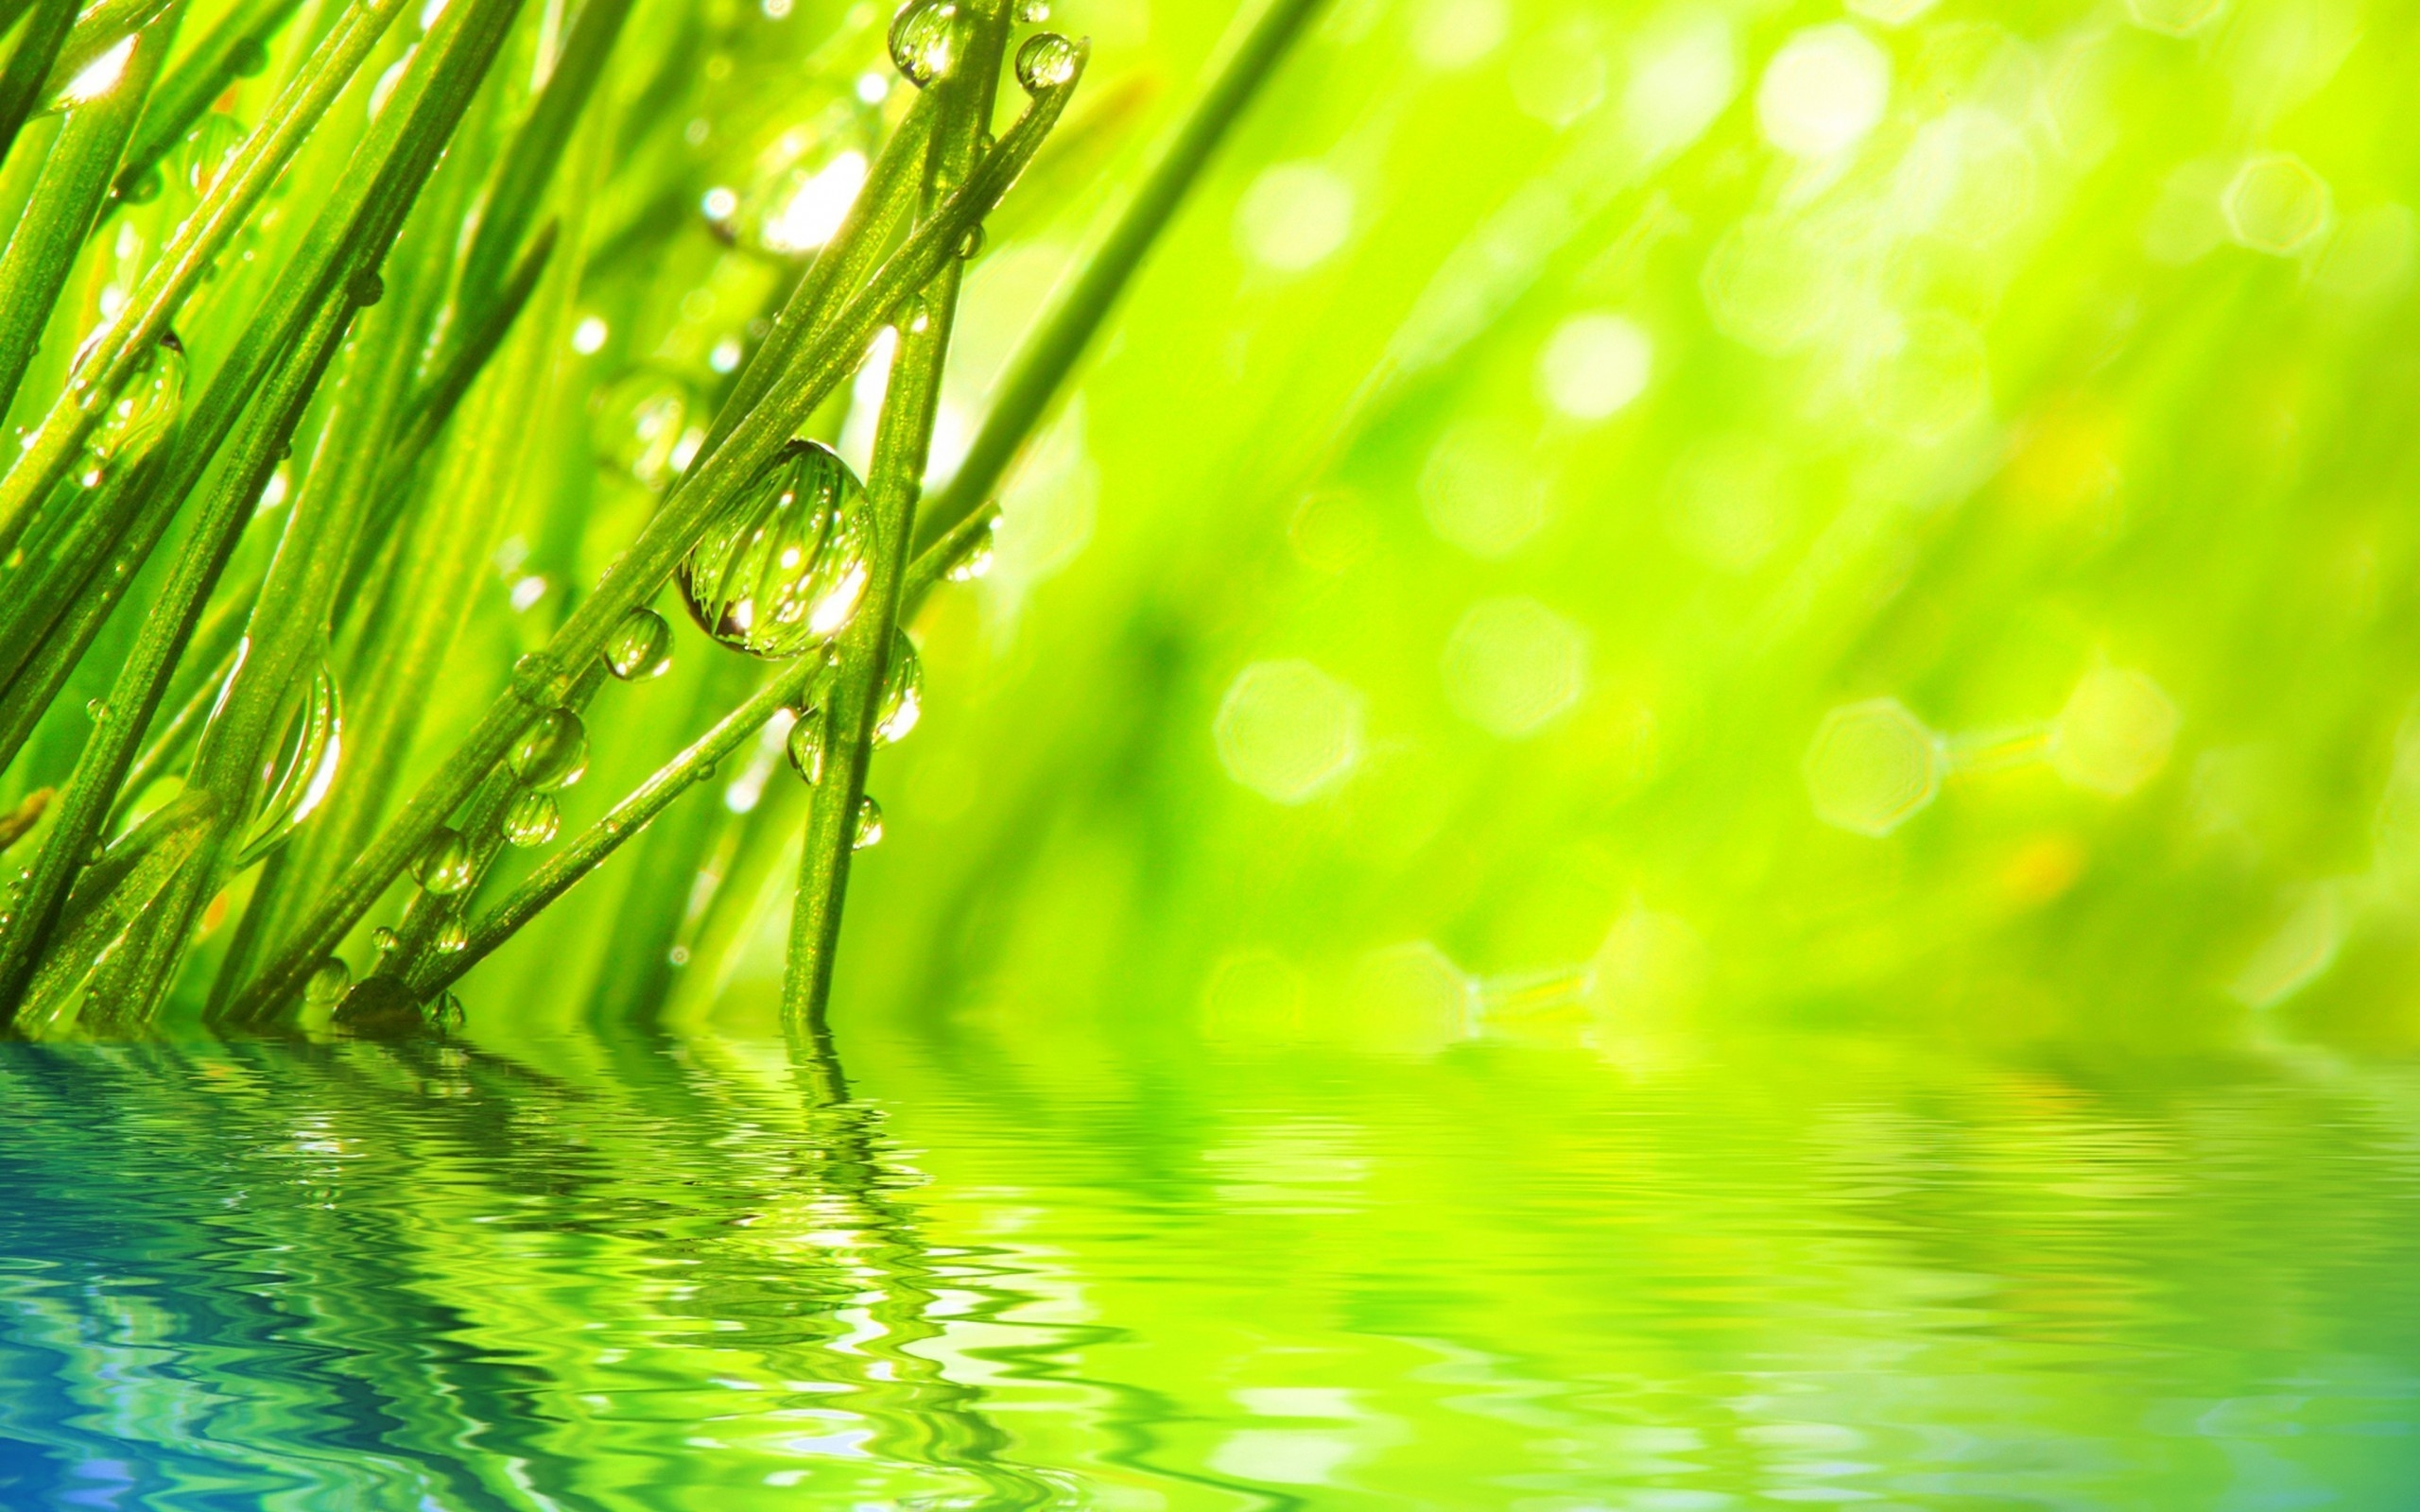 Water Drops on Grass HD Wallpaper - WallpaperFX